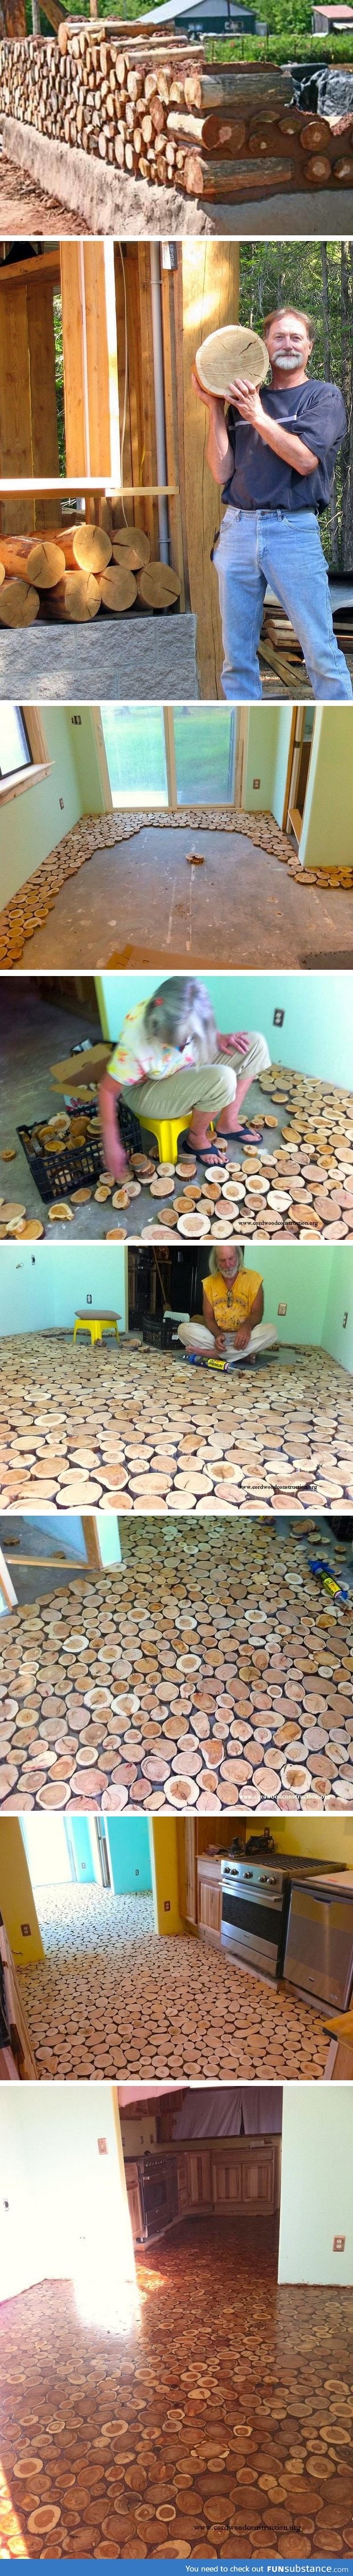 Cordwood floor DIY project I saw online